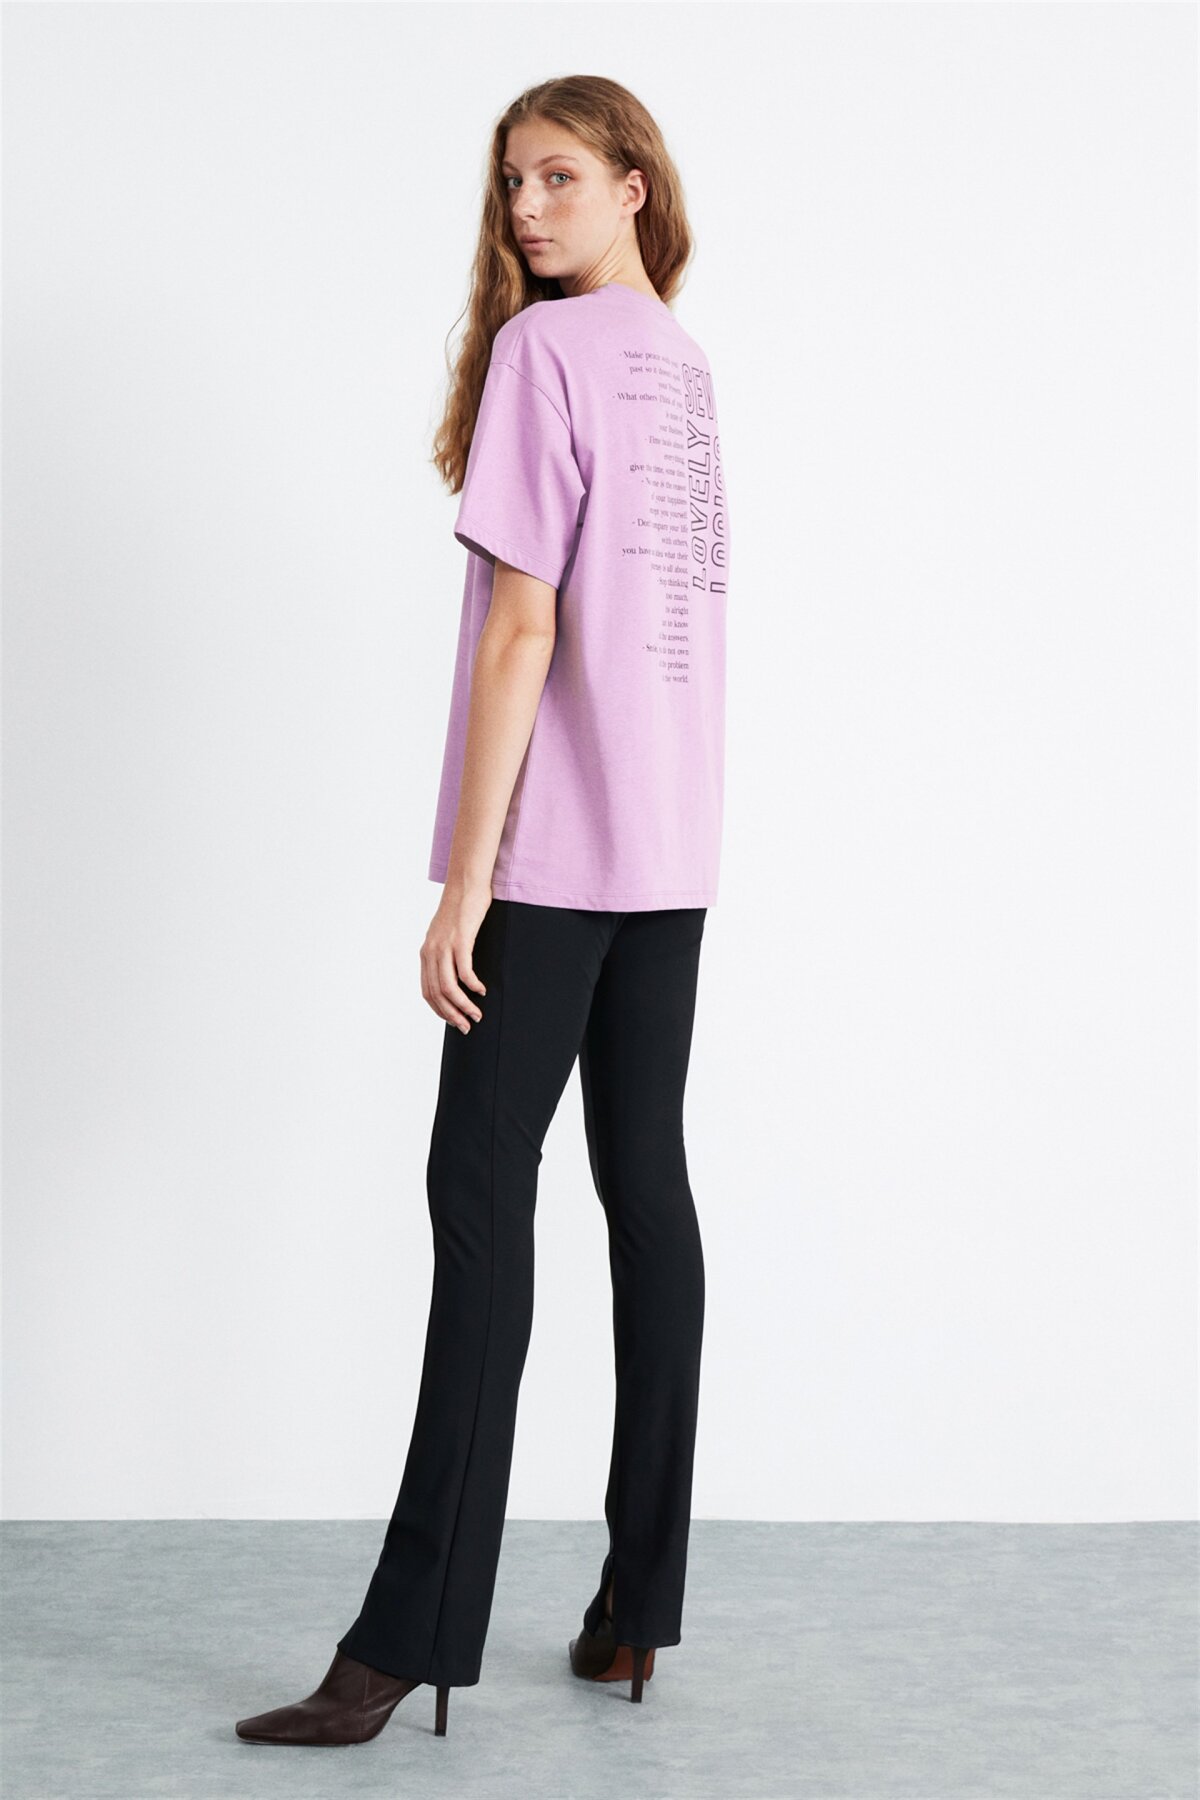 GRIMELANGE Mor Natalie Örme Oversize T-shirt